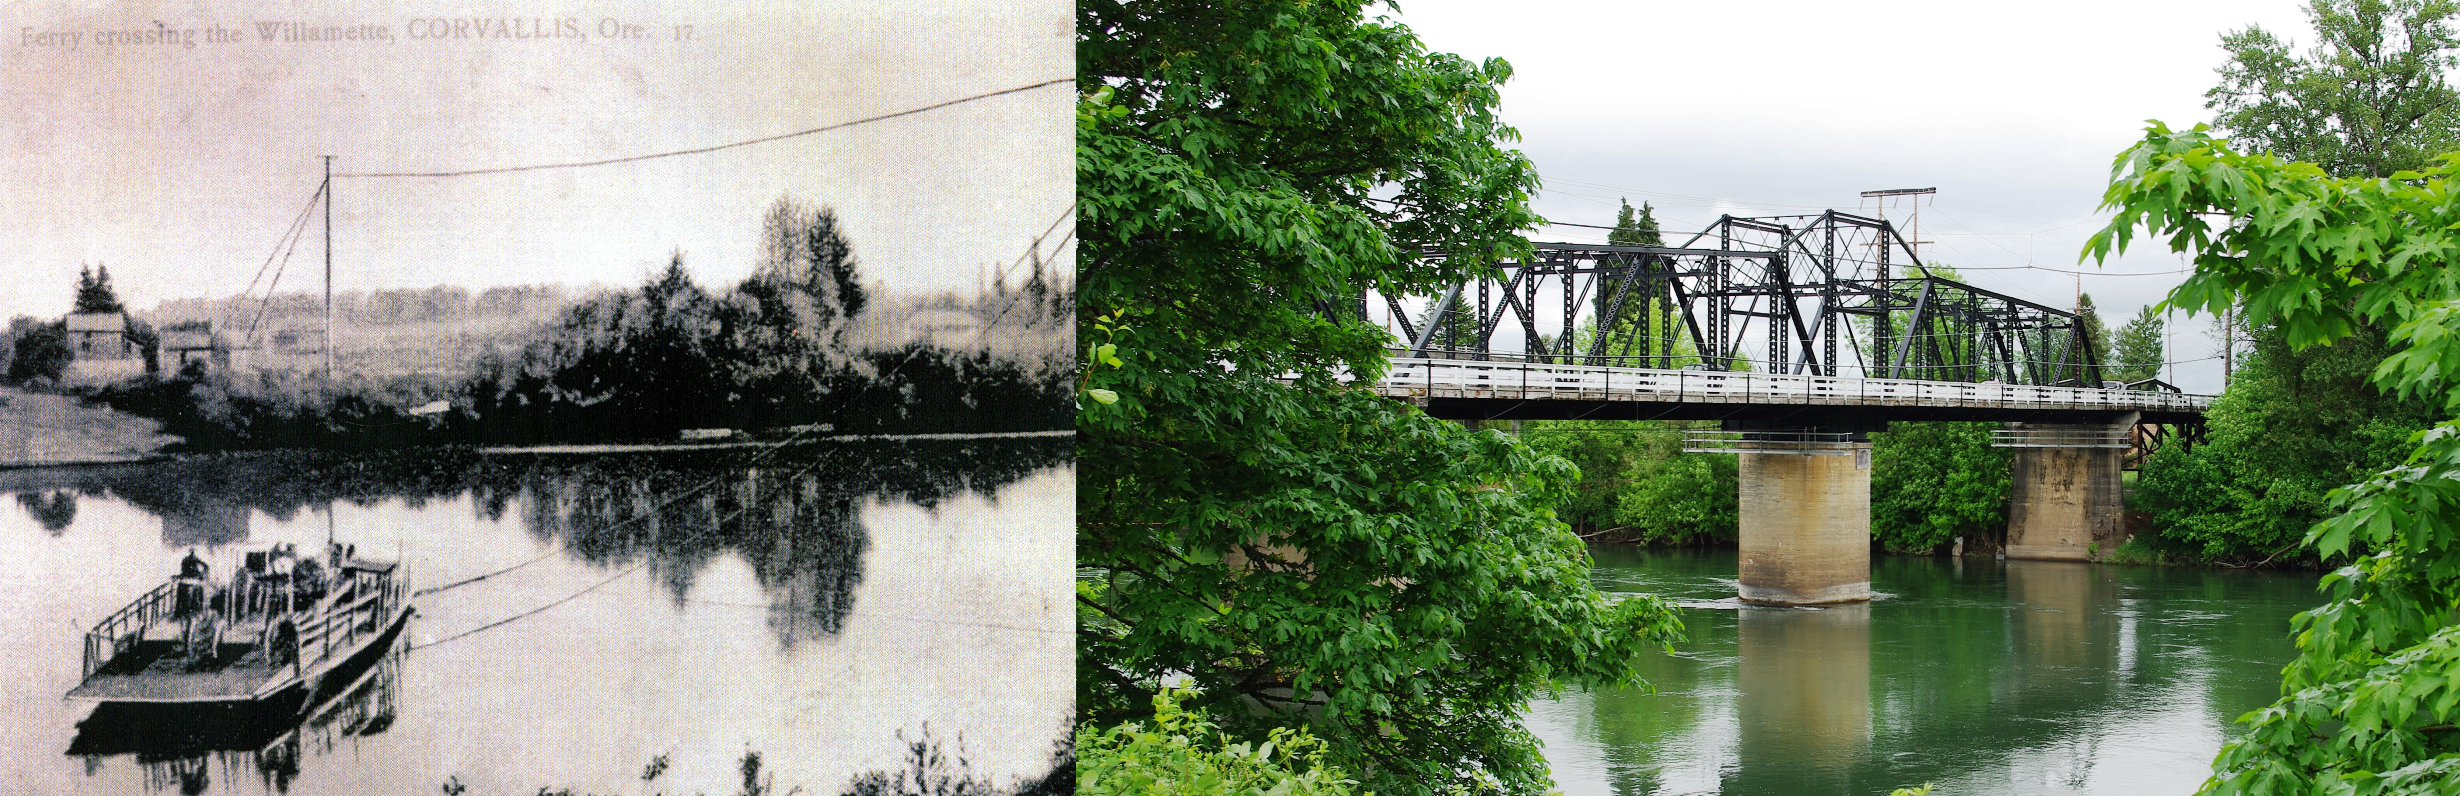 Van Buren Bridge then and now.png